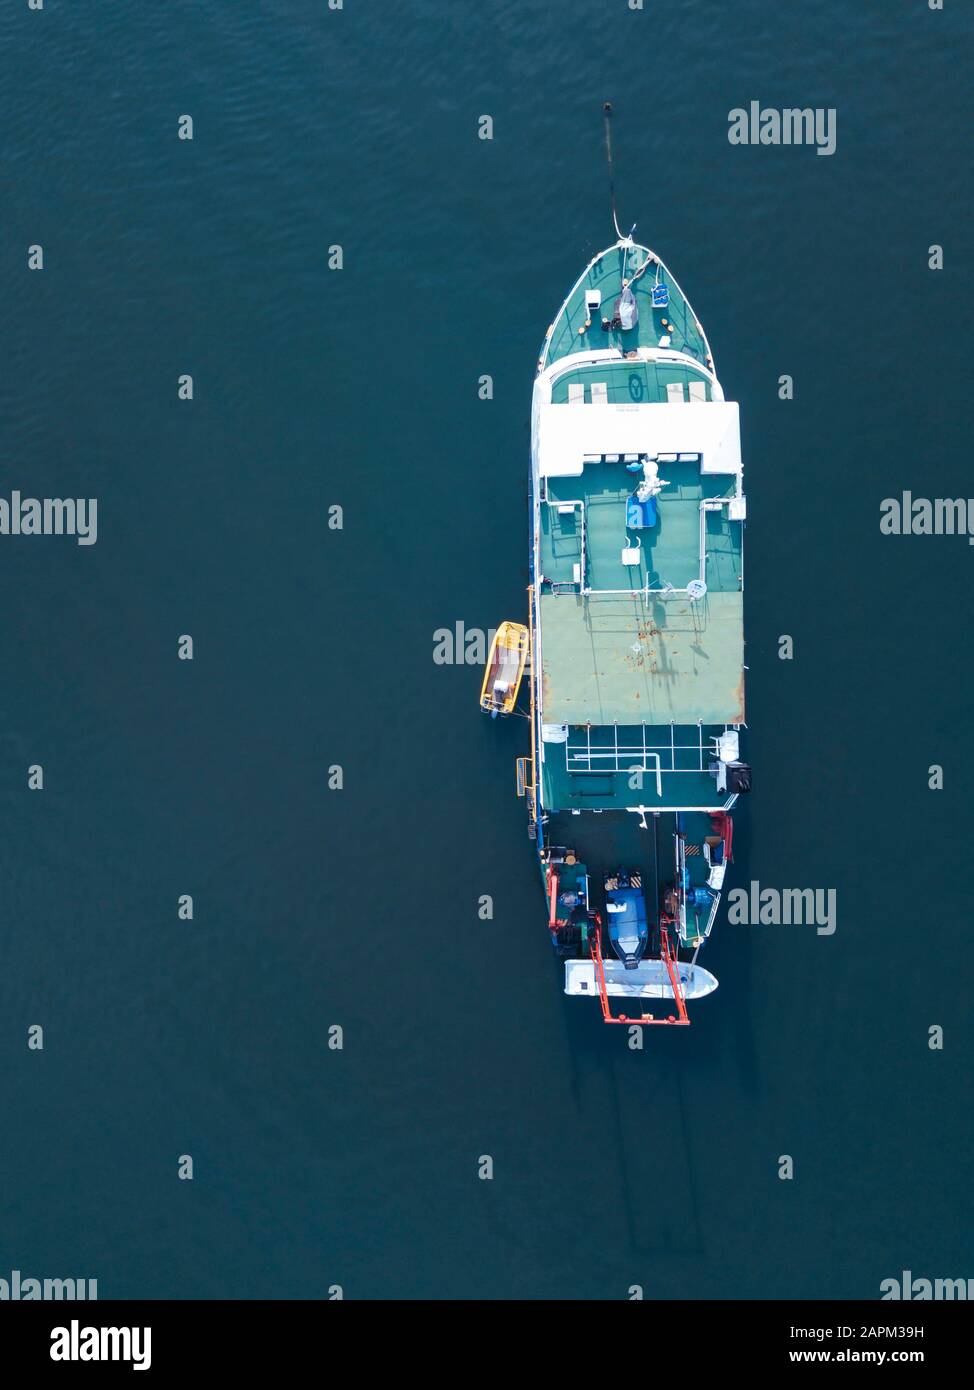 Indonesia, Bali, Serangan, veduta aerea della barca da pesca galleggiante in acqua di mare blu Foto Stock